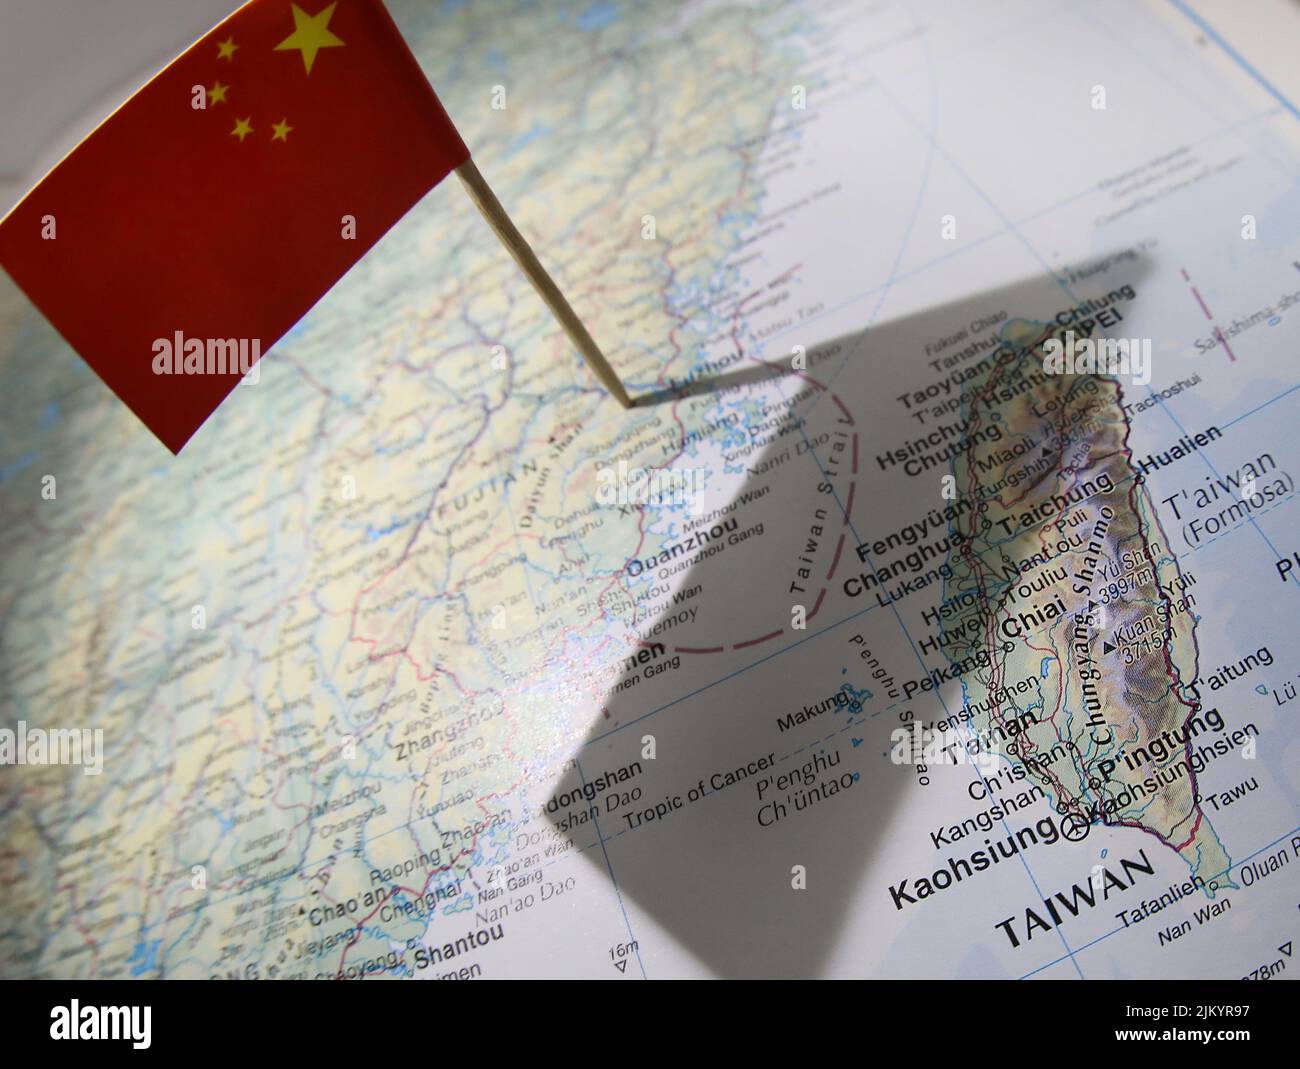 Un gráfico de estilo editorial que muestra la bandera china en un mapa que arroja una sombra desde su territorio sobre Taiwán y el disputado Estrecho de Taiwán. Foto de stock